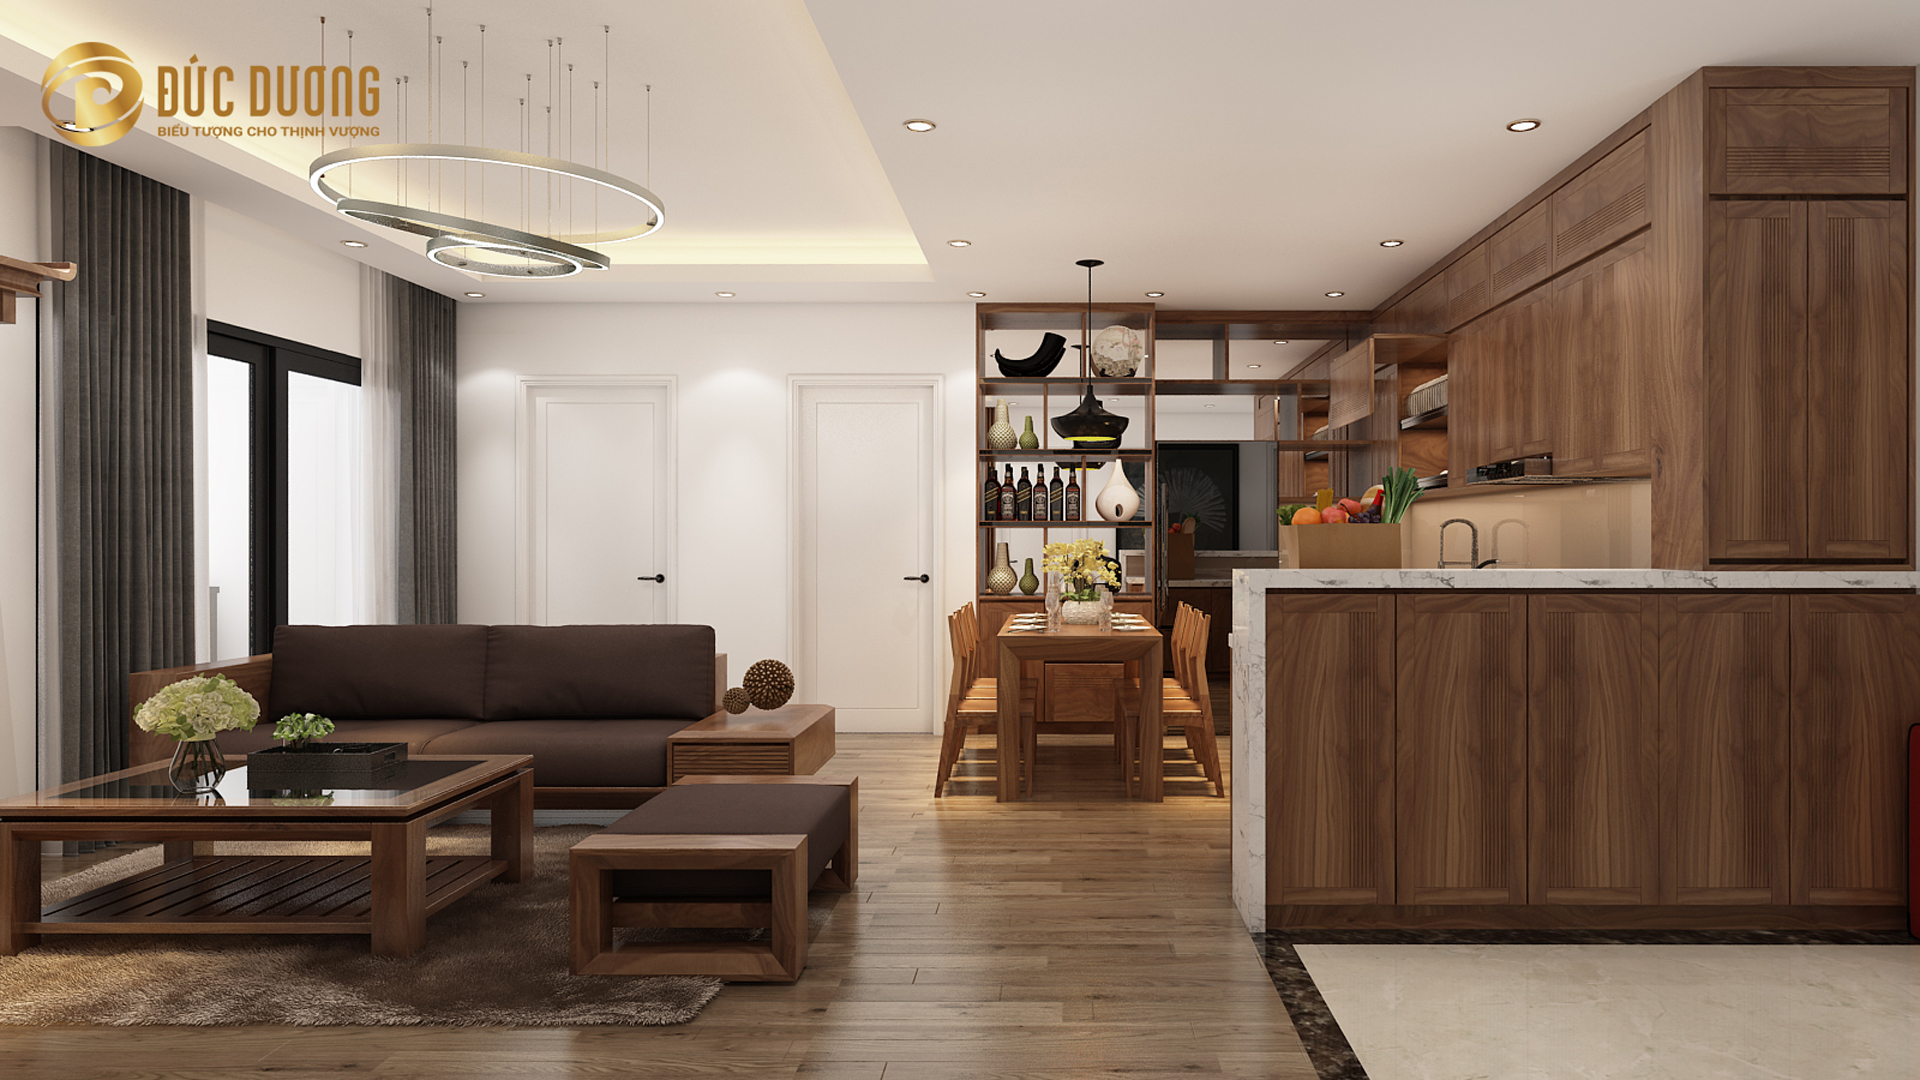 Mẫu thiết kế nội thất phòng khách chung cư đang được yêu thích nhất năm 2020